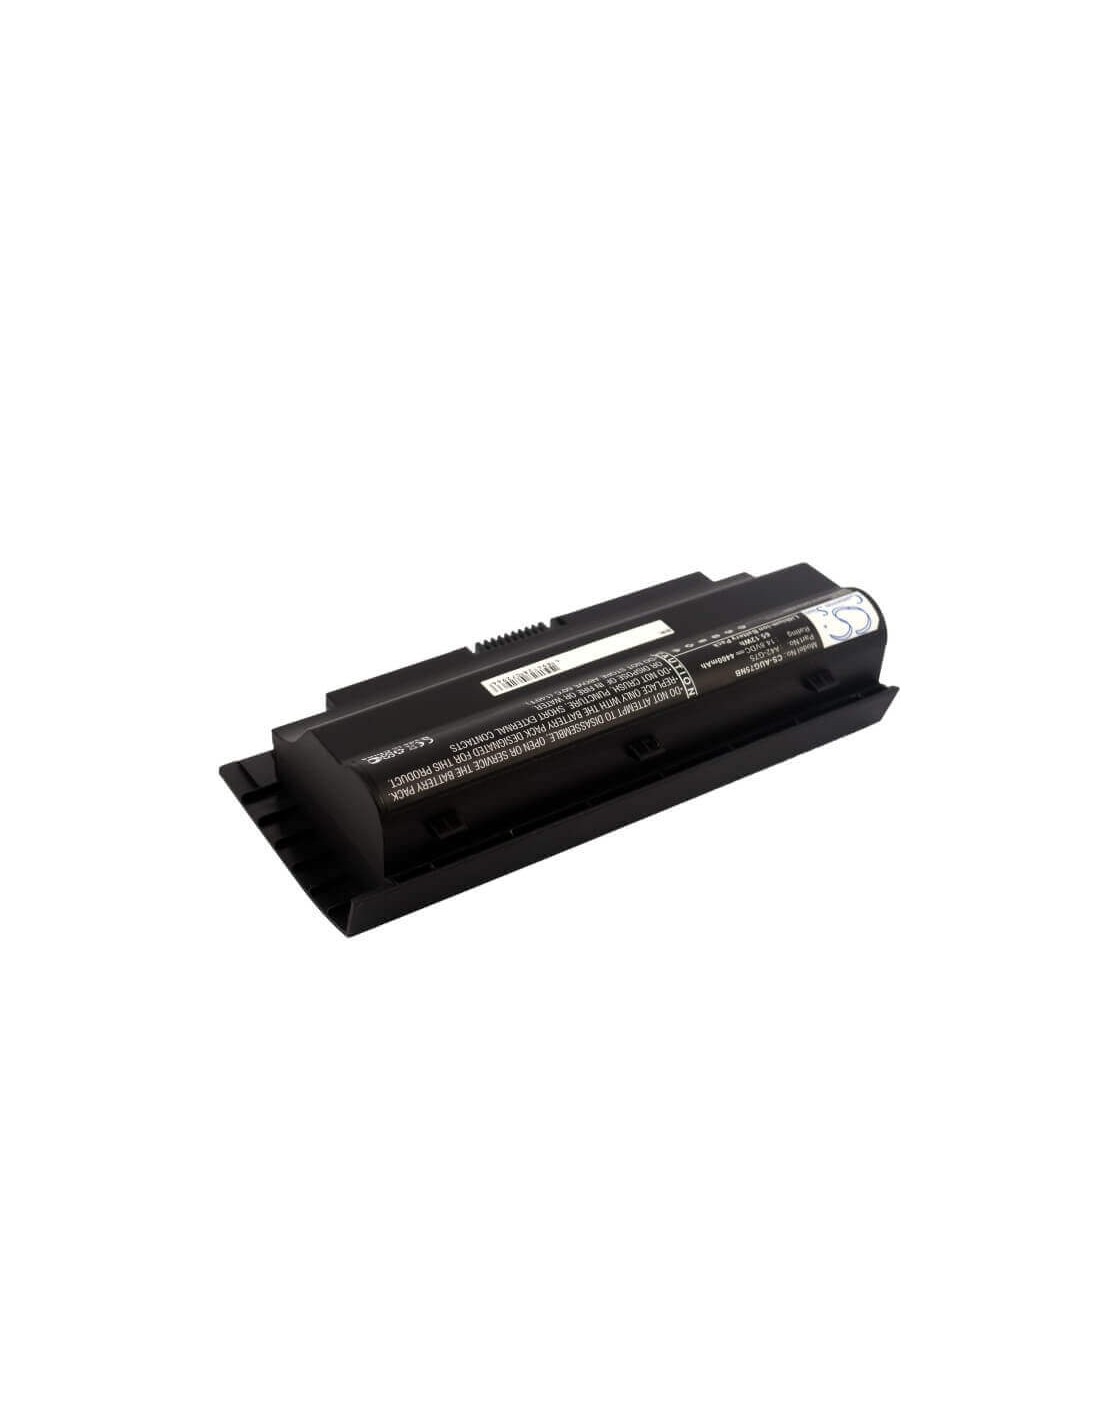 Black Battery for Asus G75, G75v, G75vm 14.8V, 4400mAh - 65.12Wh